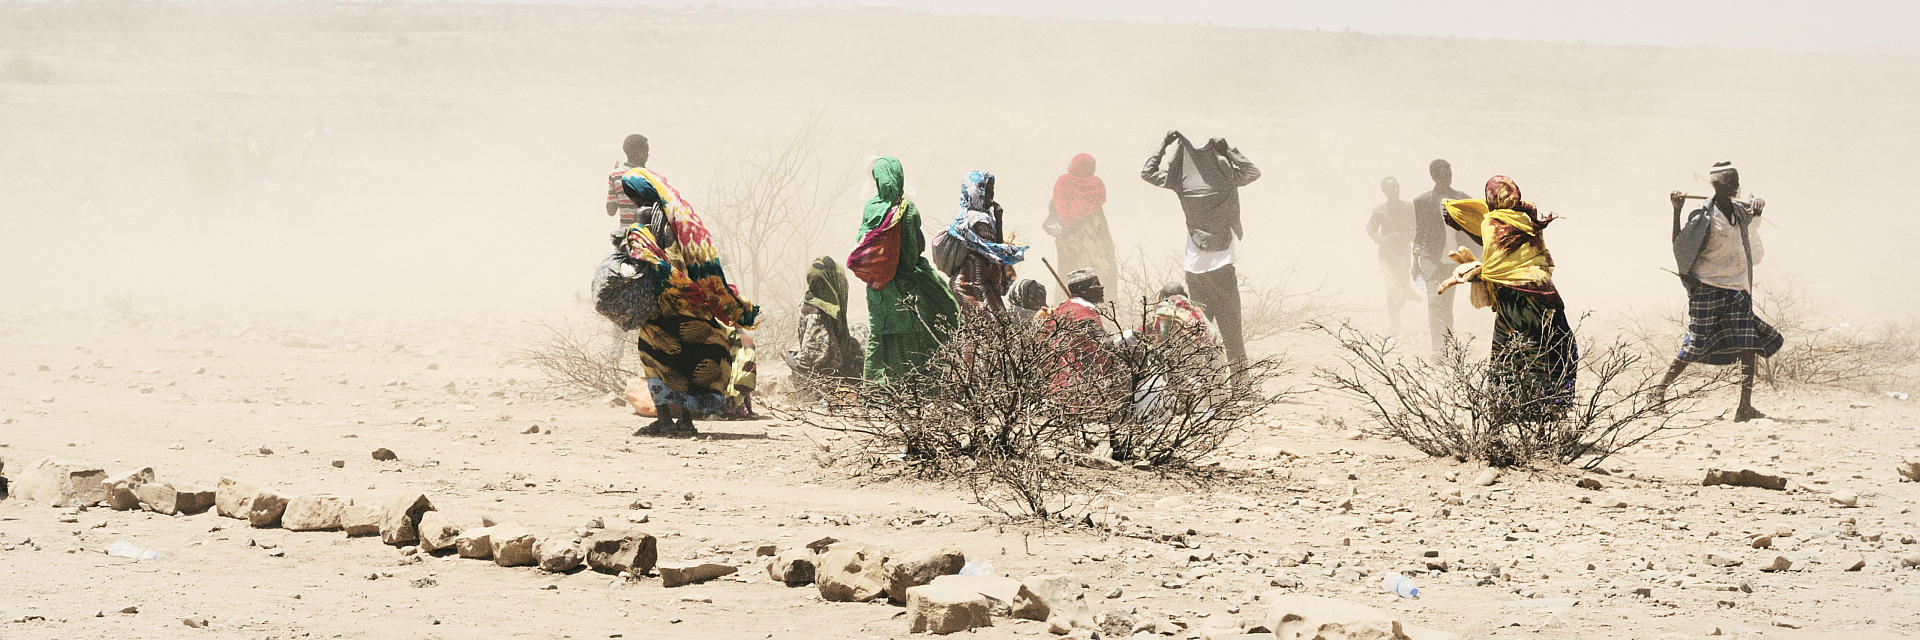 Somalier in verdorrter Landschaft